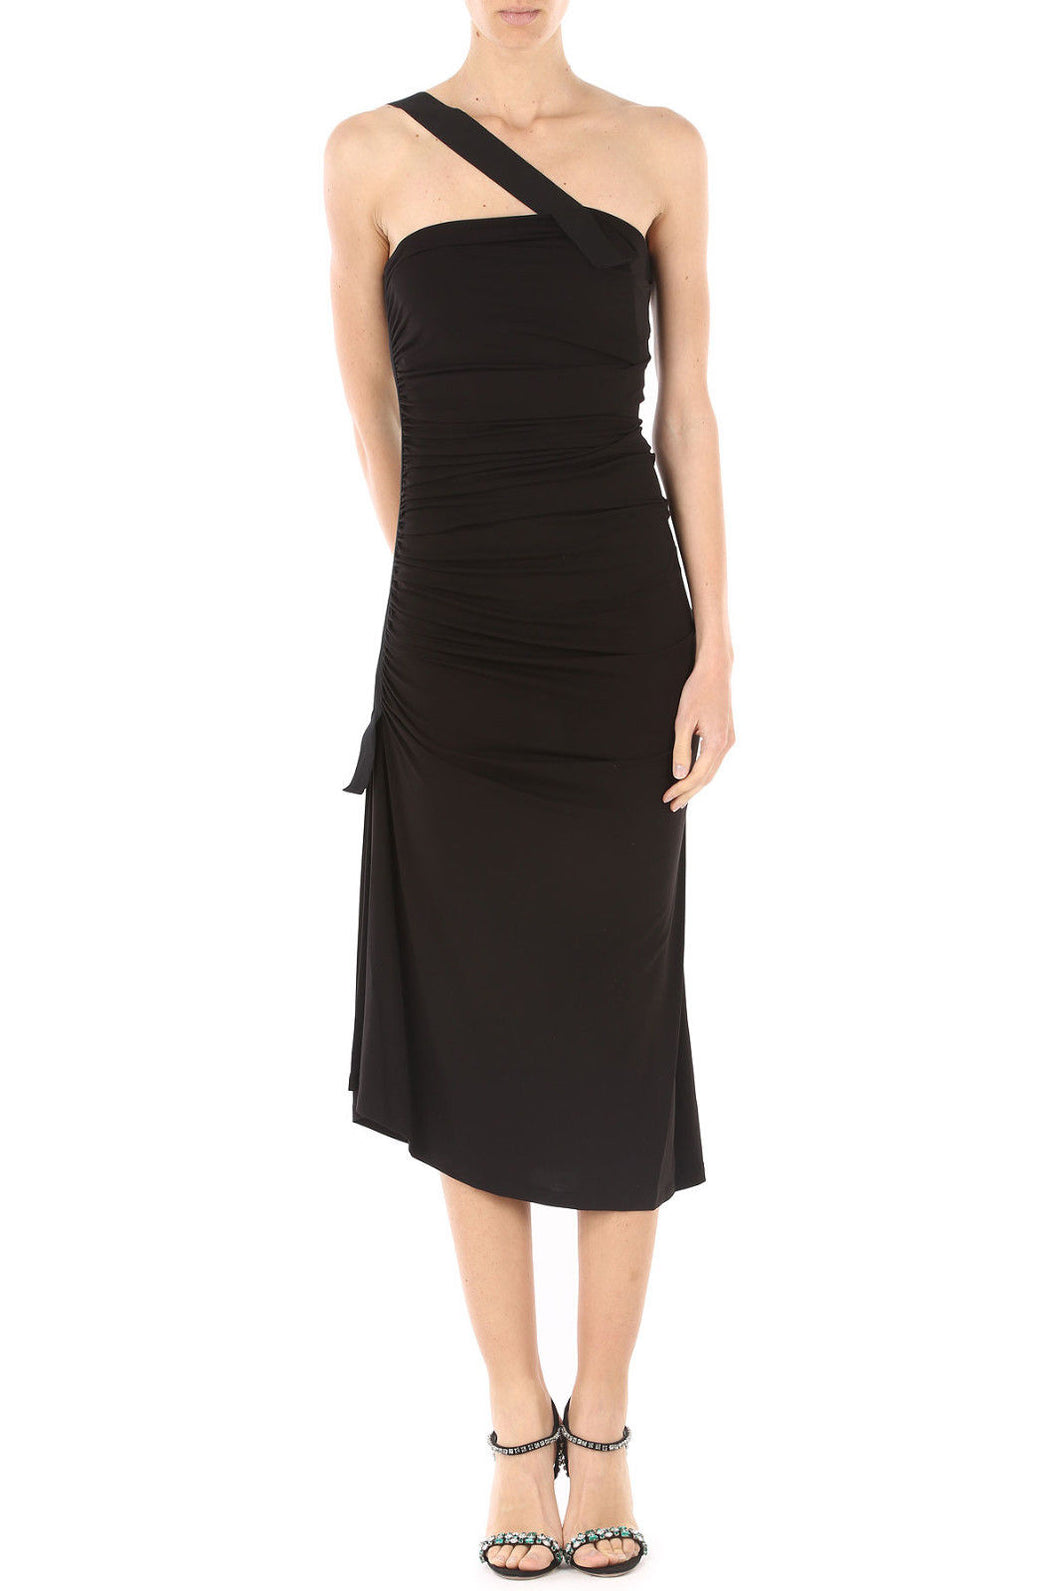 PINKO Women's Dress Size XS Black IT 38 Long Sleeveless